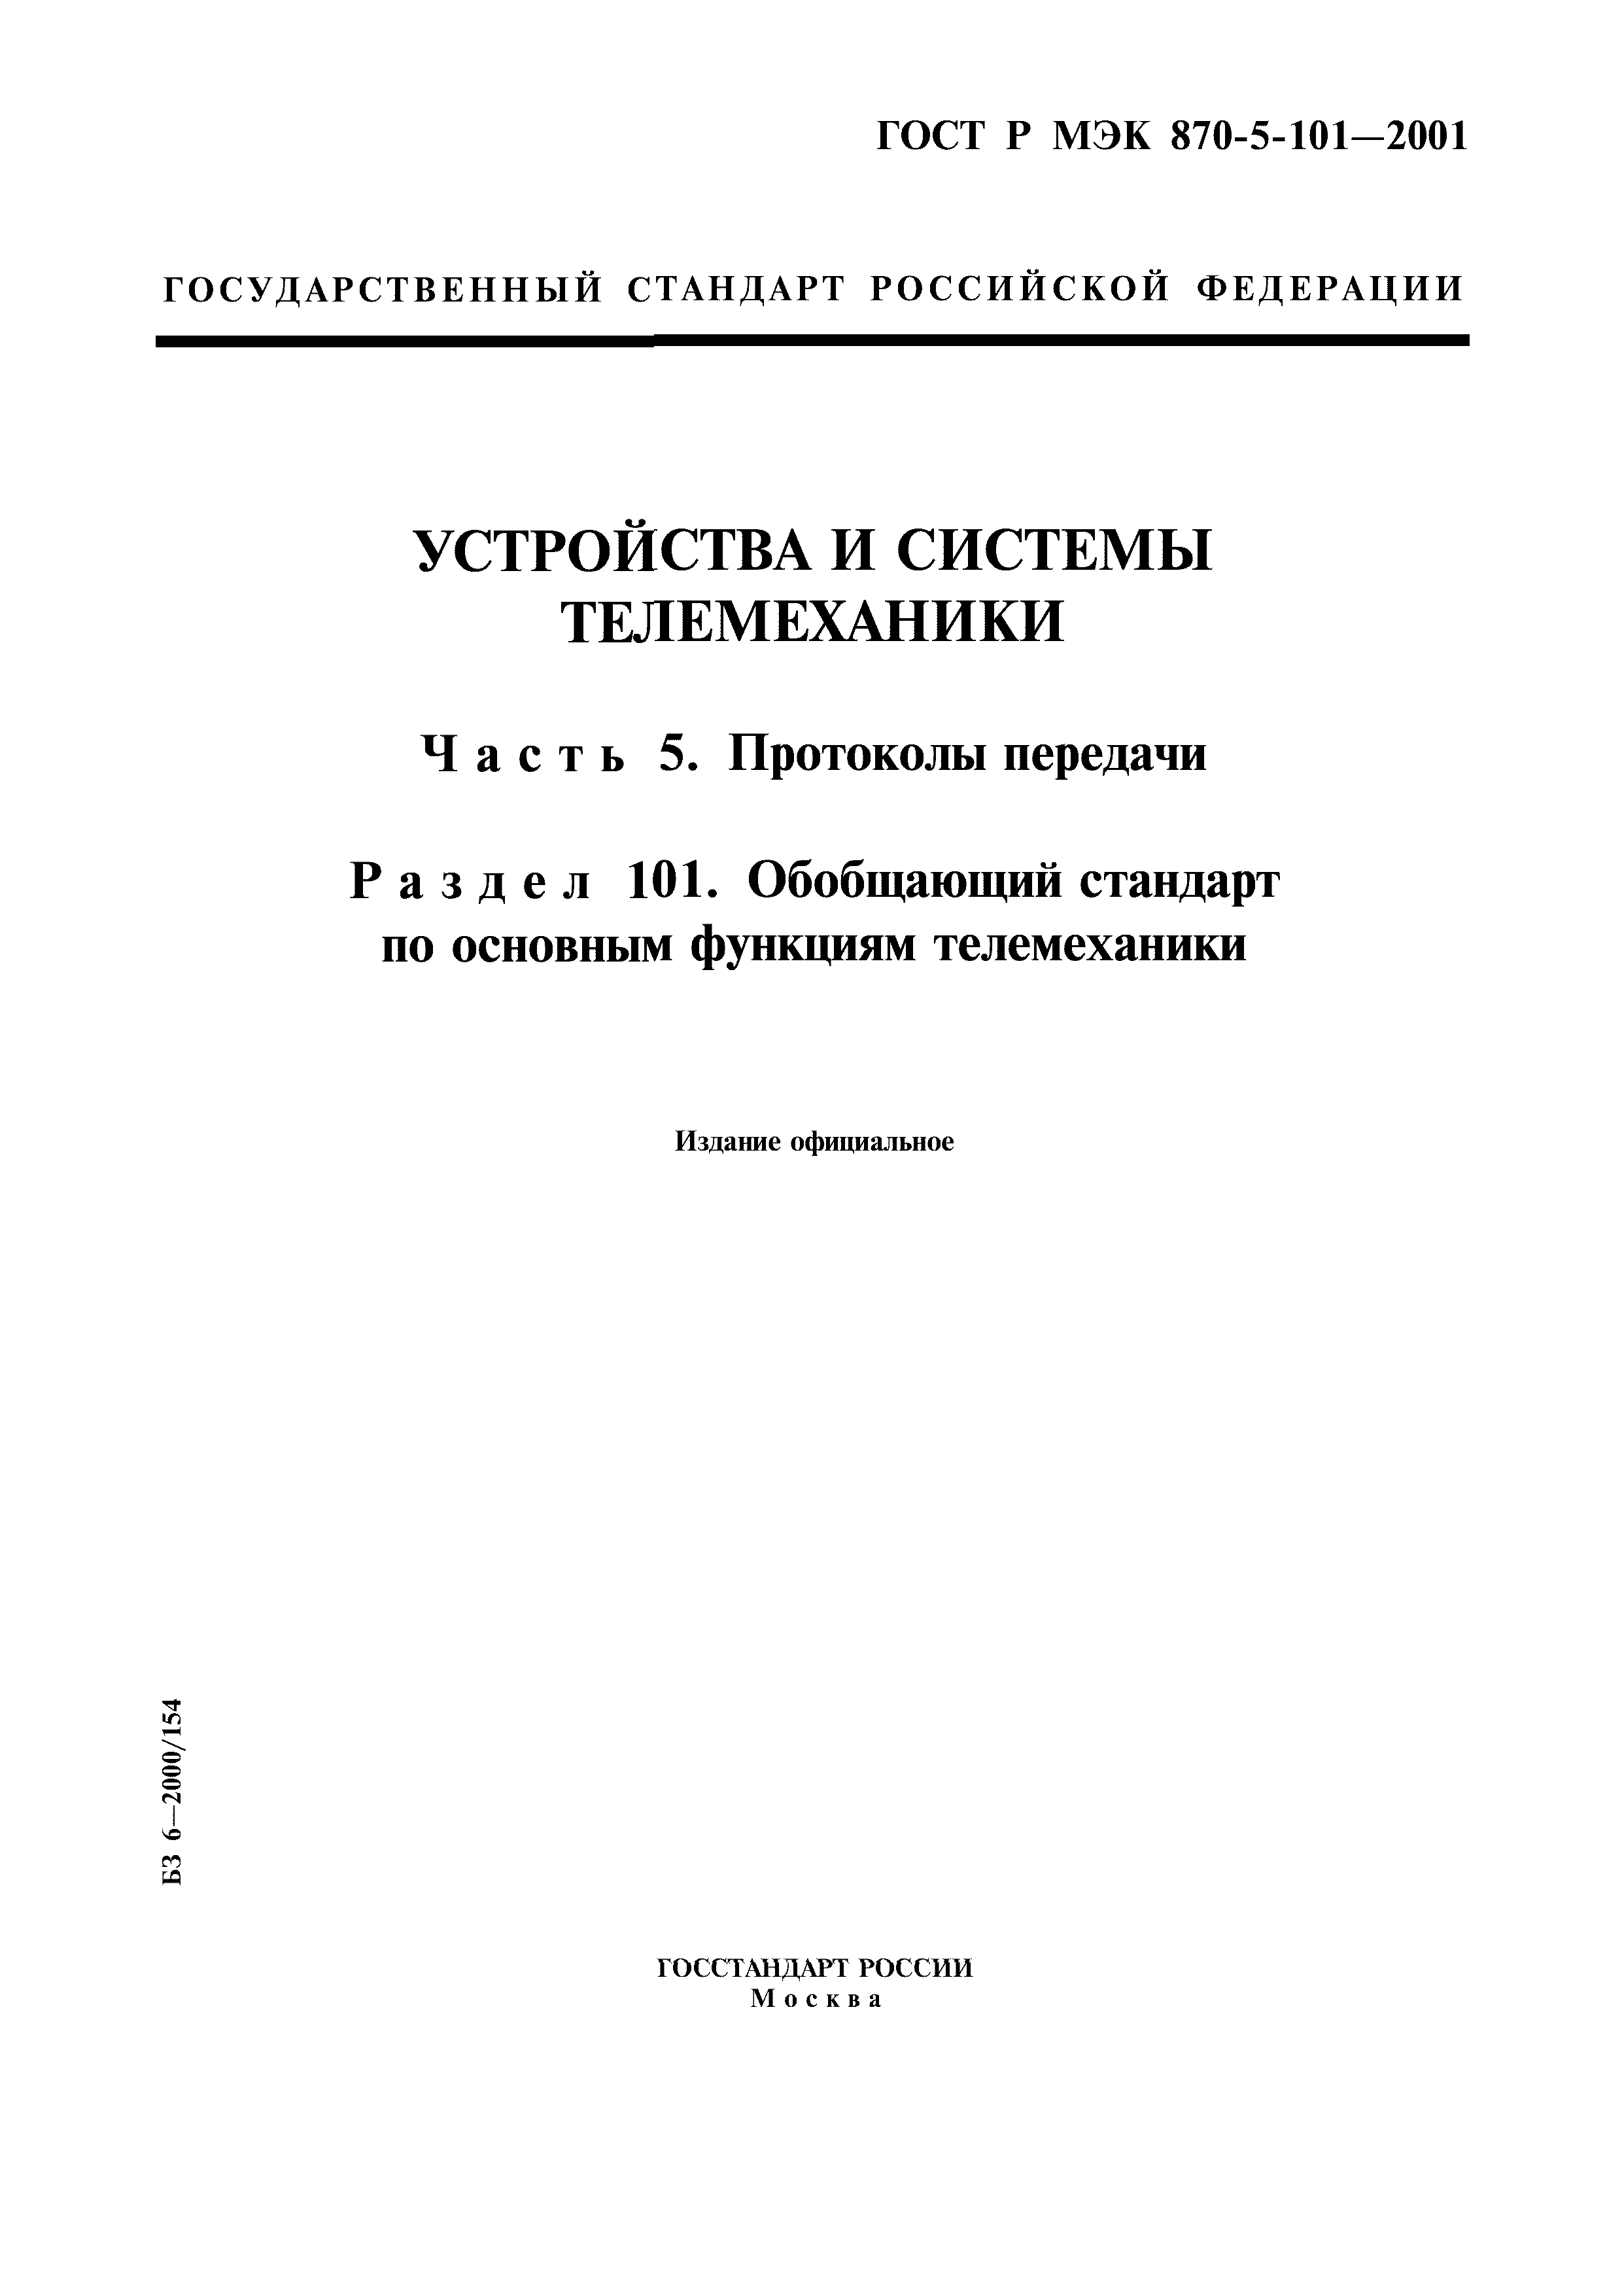 ГОСТ Р МЭК 870-5-101-2001